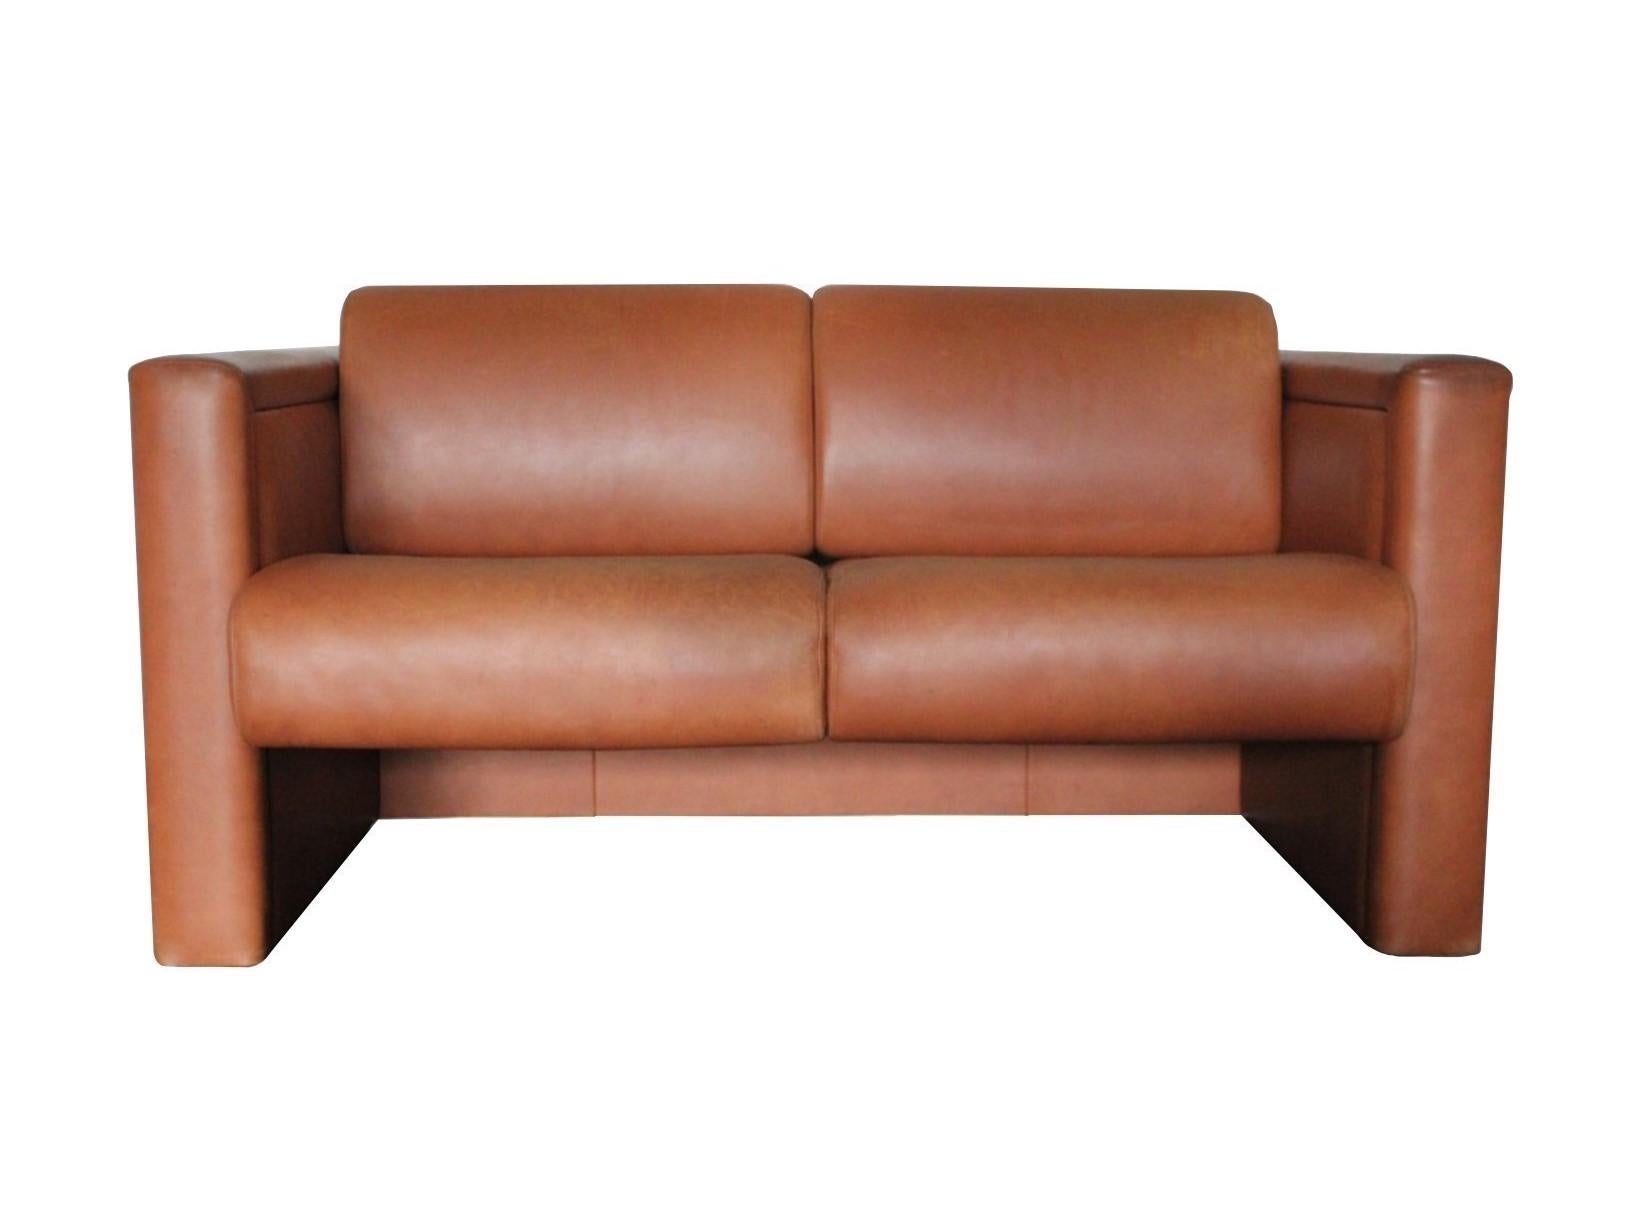 Dieses ikonische moderne Design von unvergleichlicher Qualität ist ein 2-sitziges Lounge-Sofa, das von Trix und Robert Haussmann entworfen und von dem weltbekannten Möbelhaus Knoll International hergestellt wurde. Großzügig gepolsterte Rücken- und